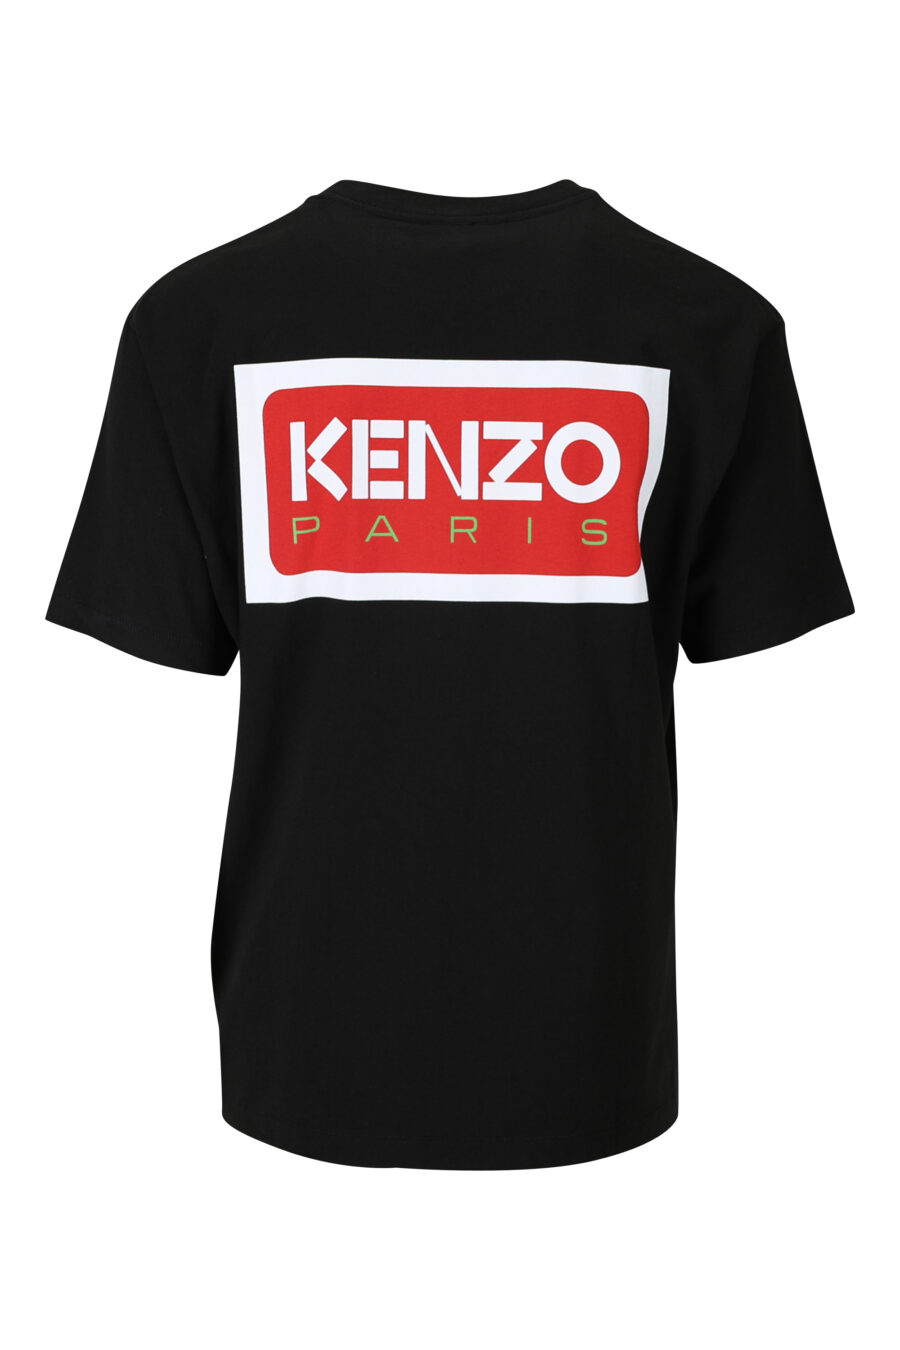 T-shirt preta com logótipo pequeno "kenzo paris" - 3612230542990 1